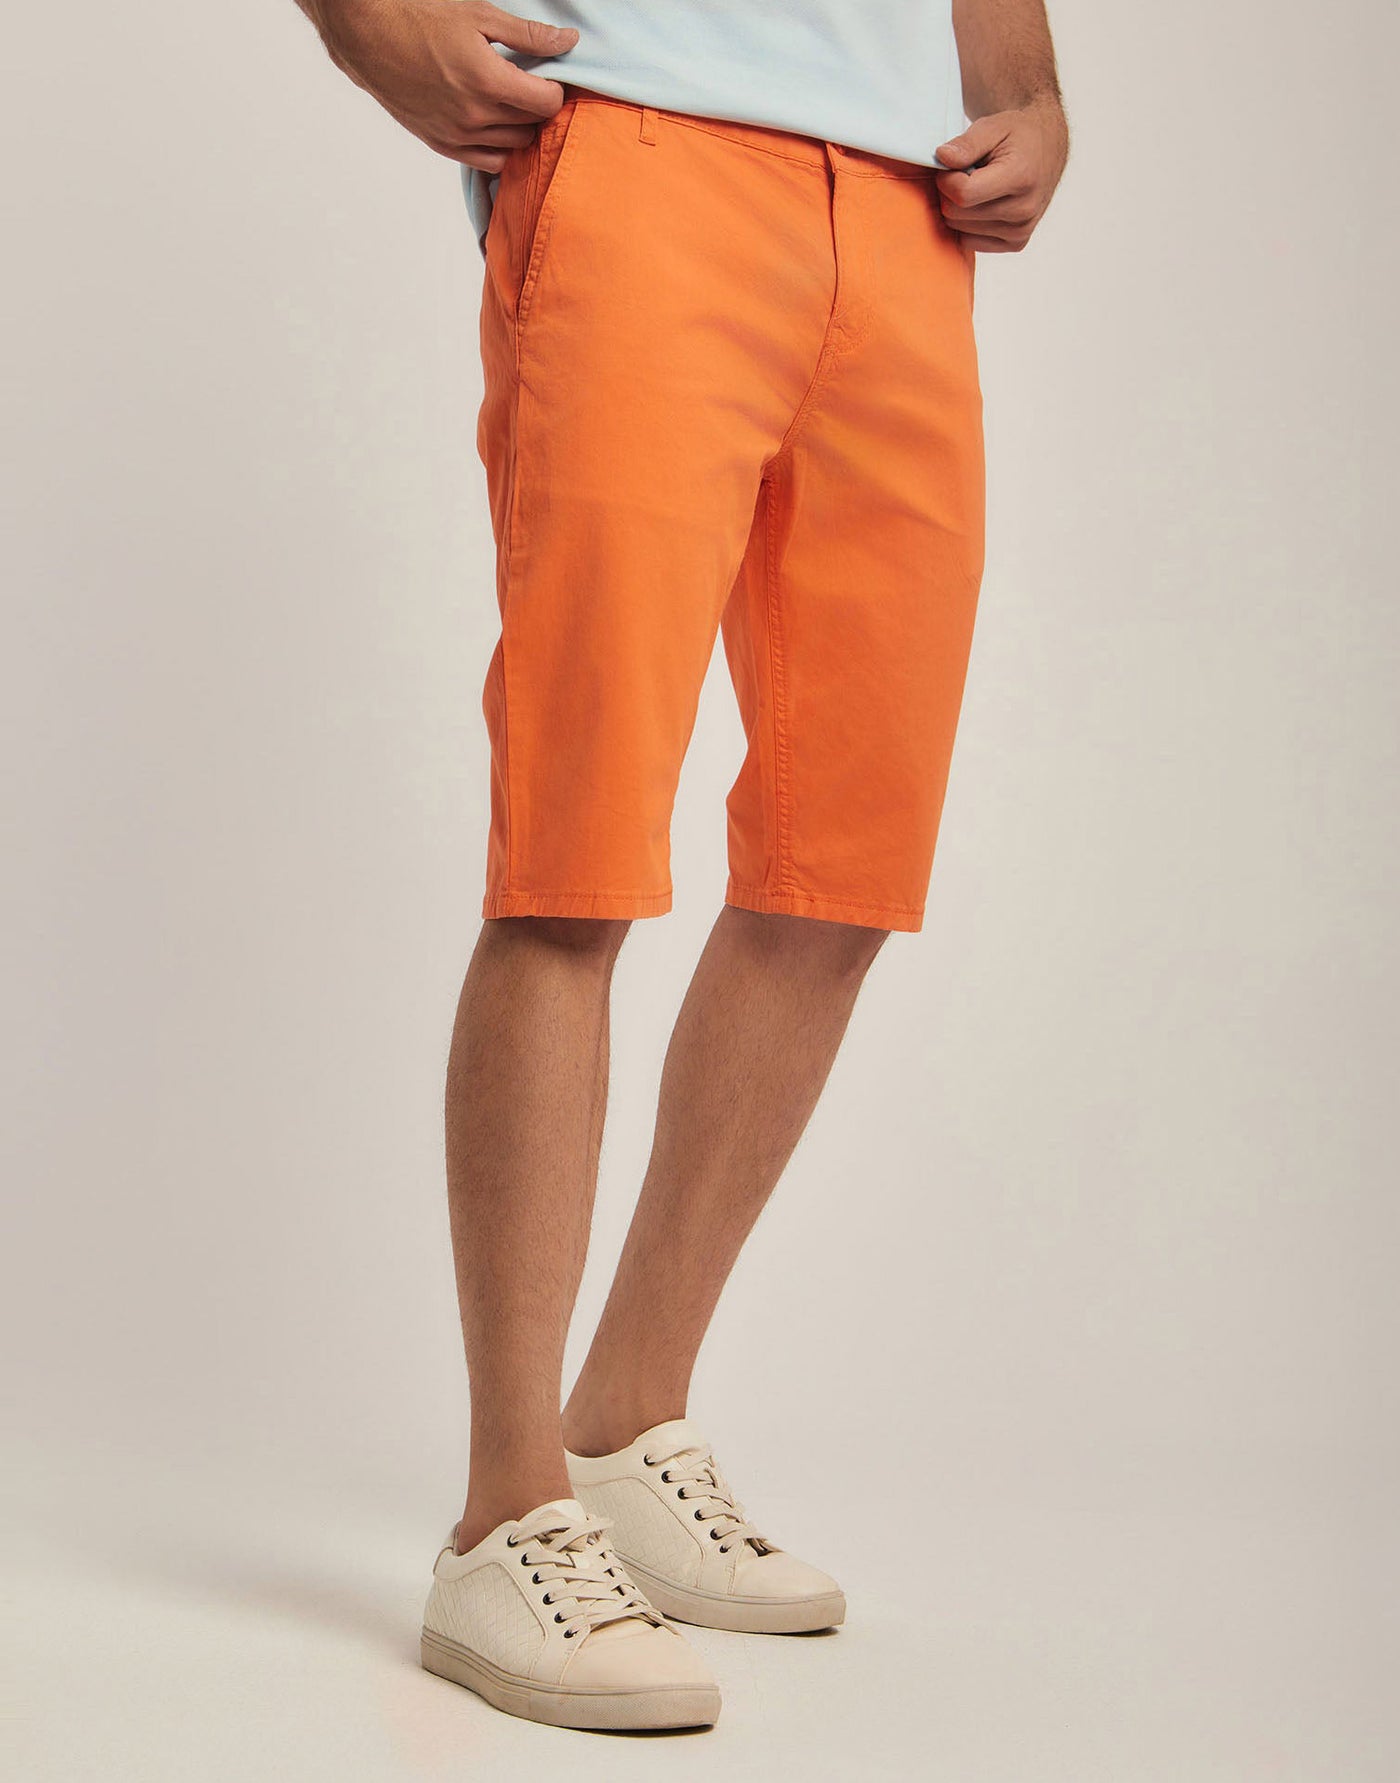 Shorts - Plain - With Pockets